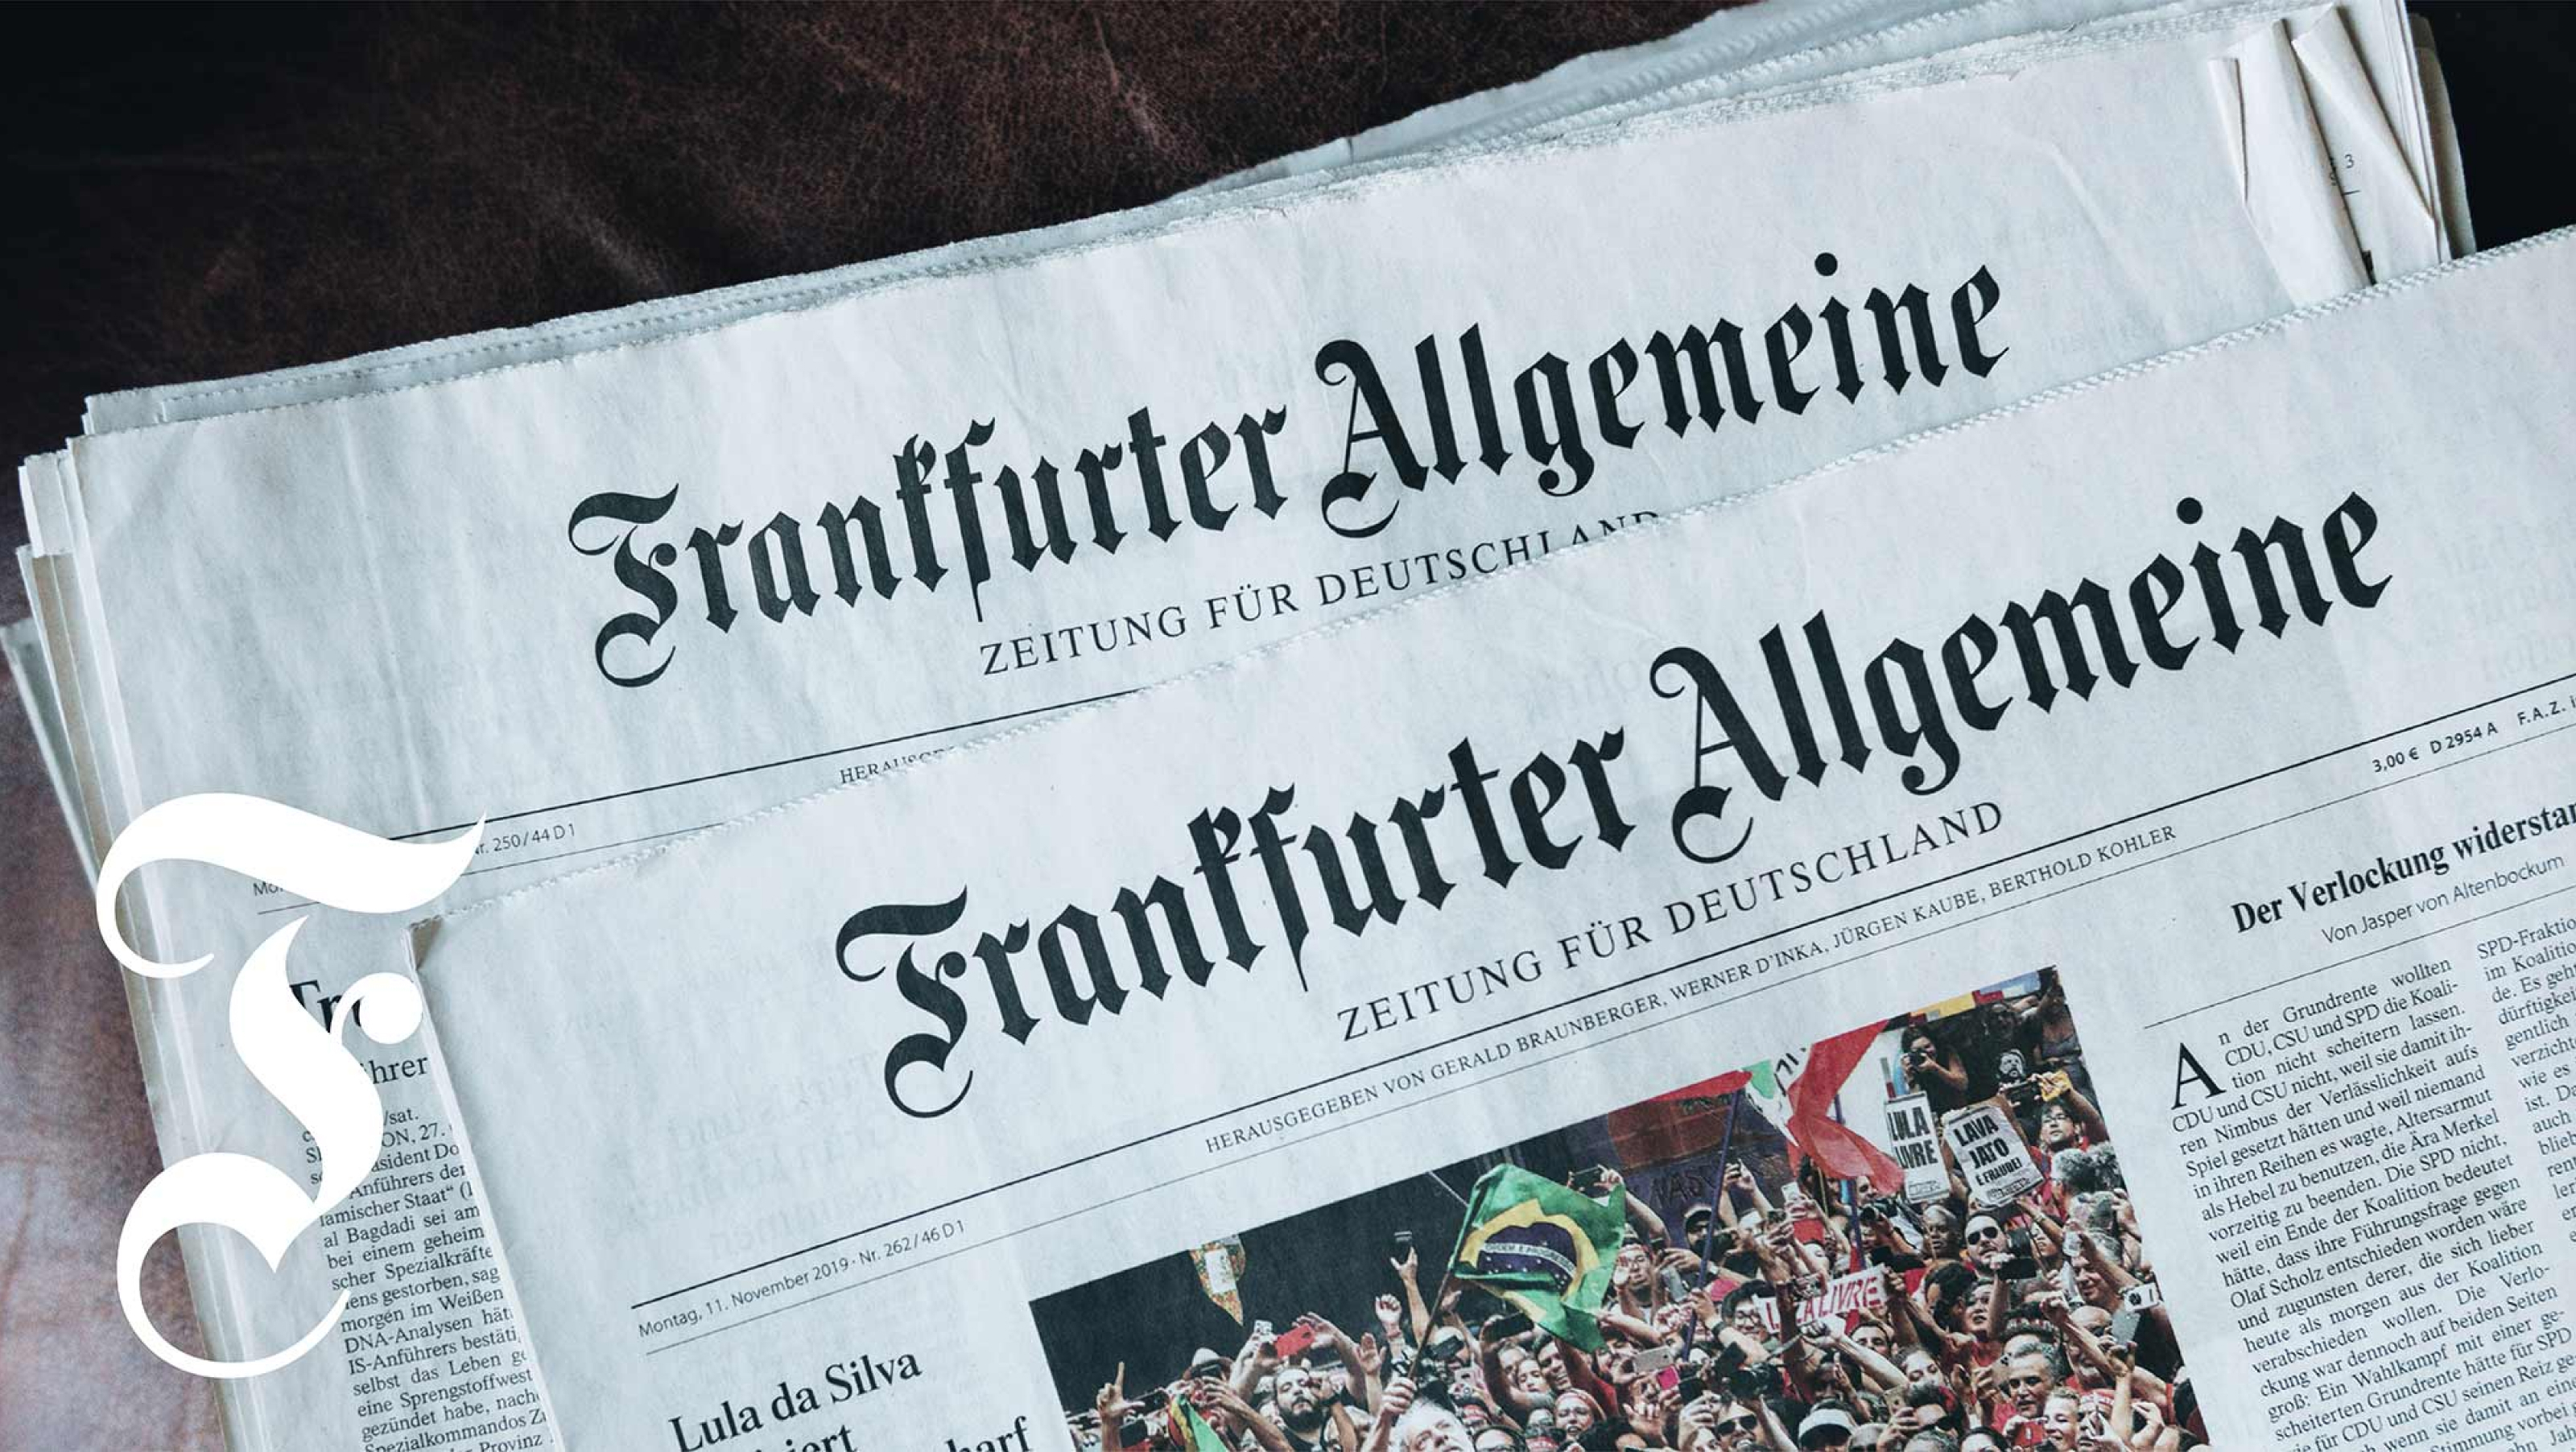 Photograph of Frankfurter Allgemeine in use